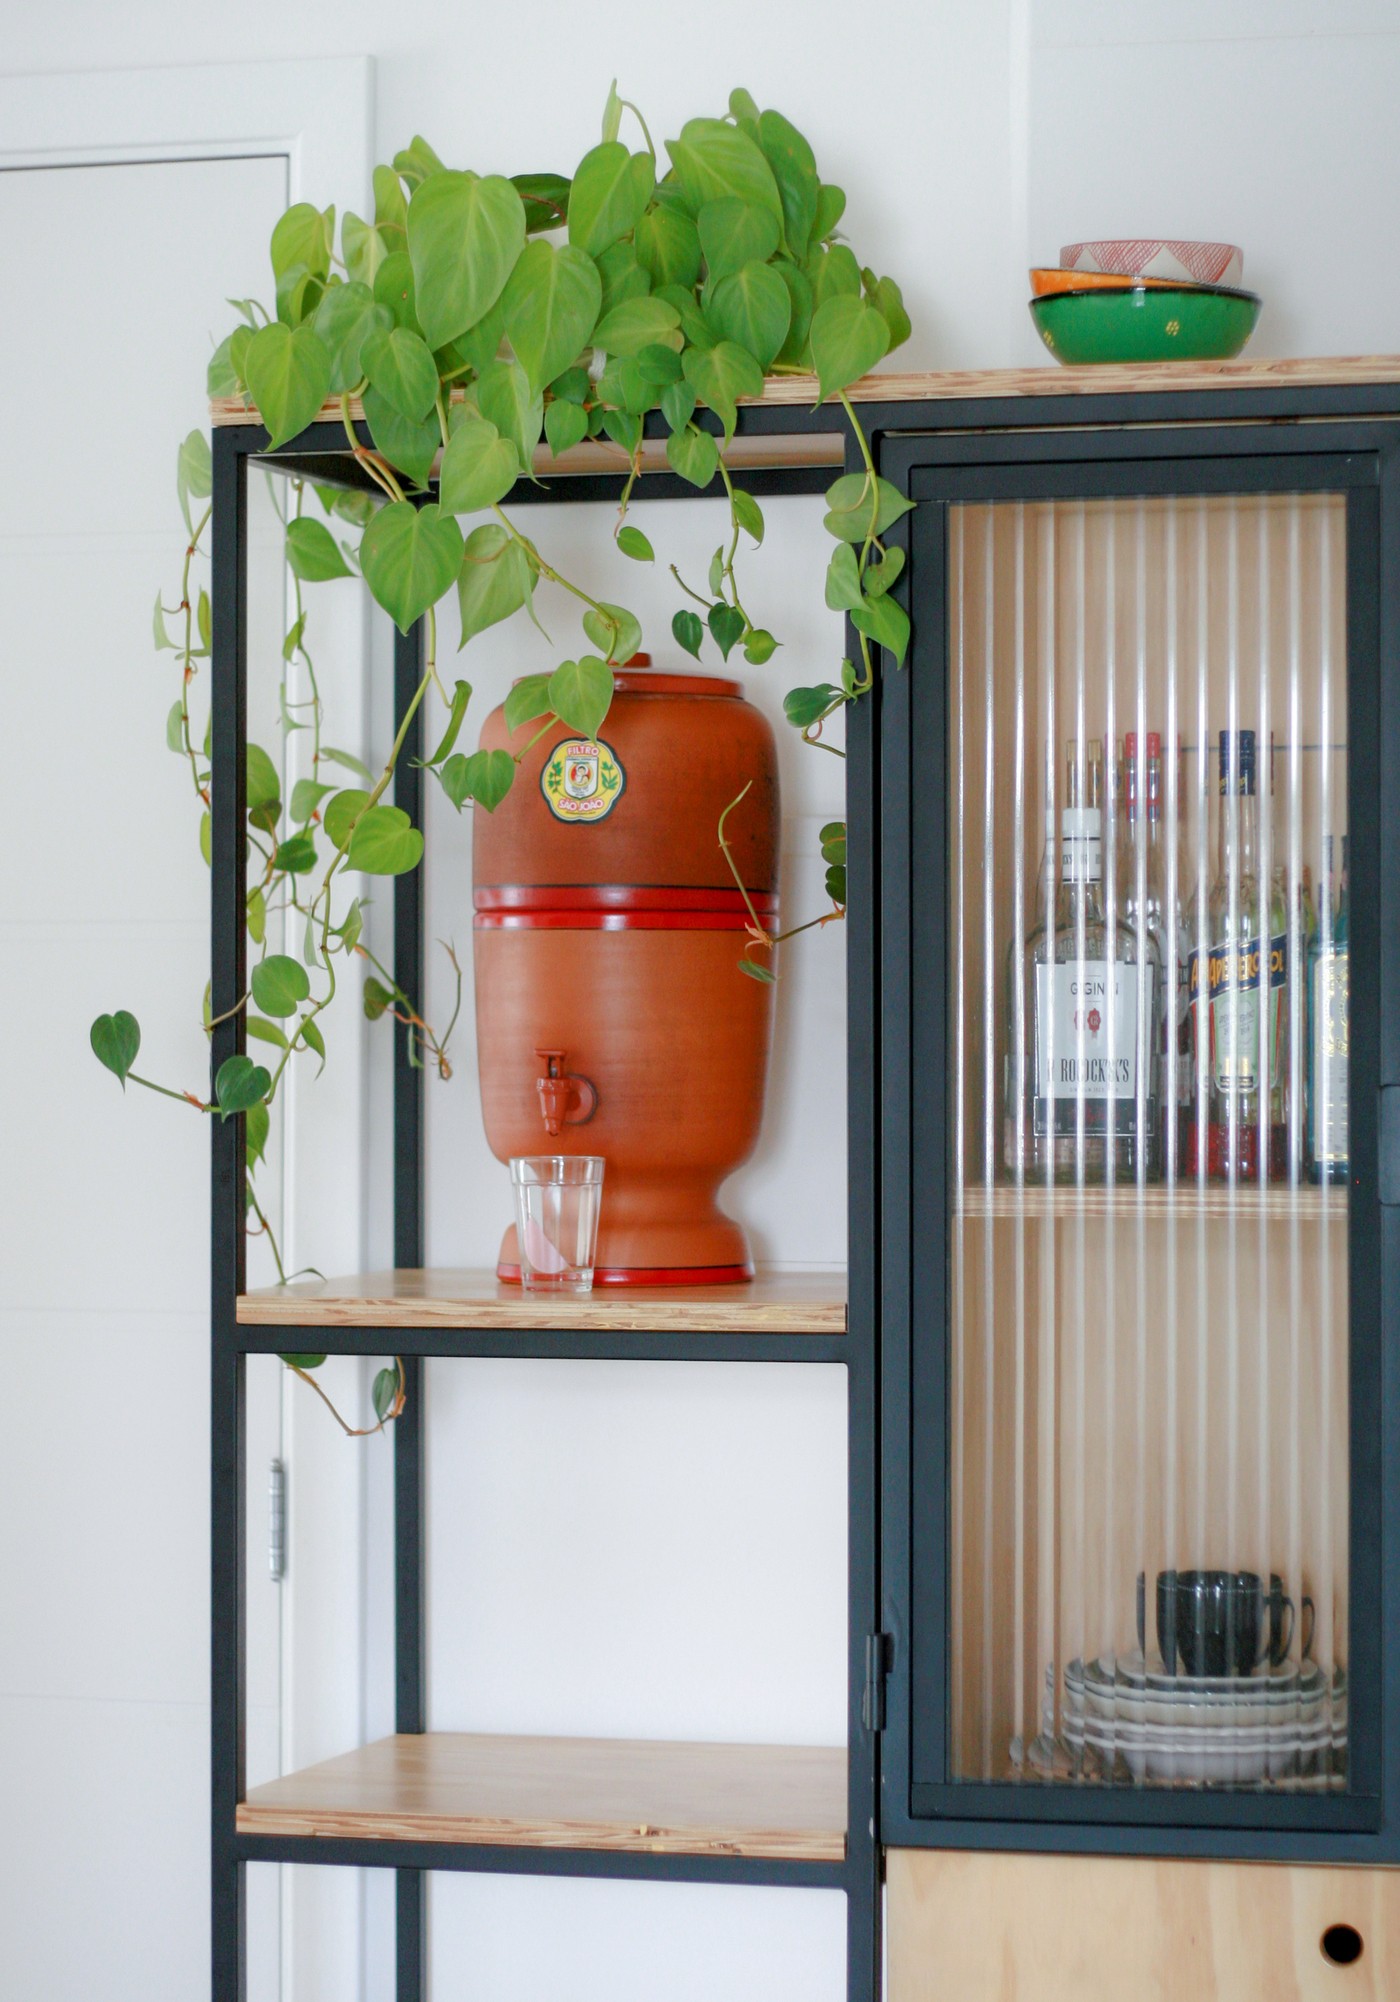 Décor do dia: cozinha com ladrilho hidráulico verde e armário de compensado (Foto: Bruna Squisatti)